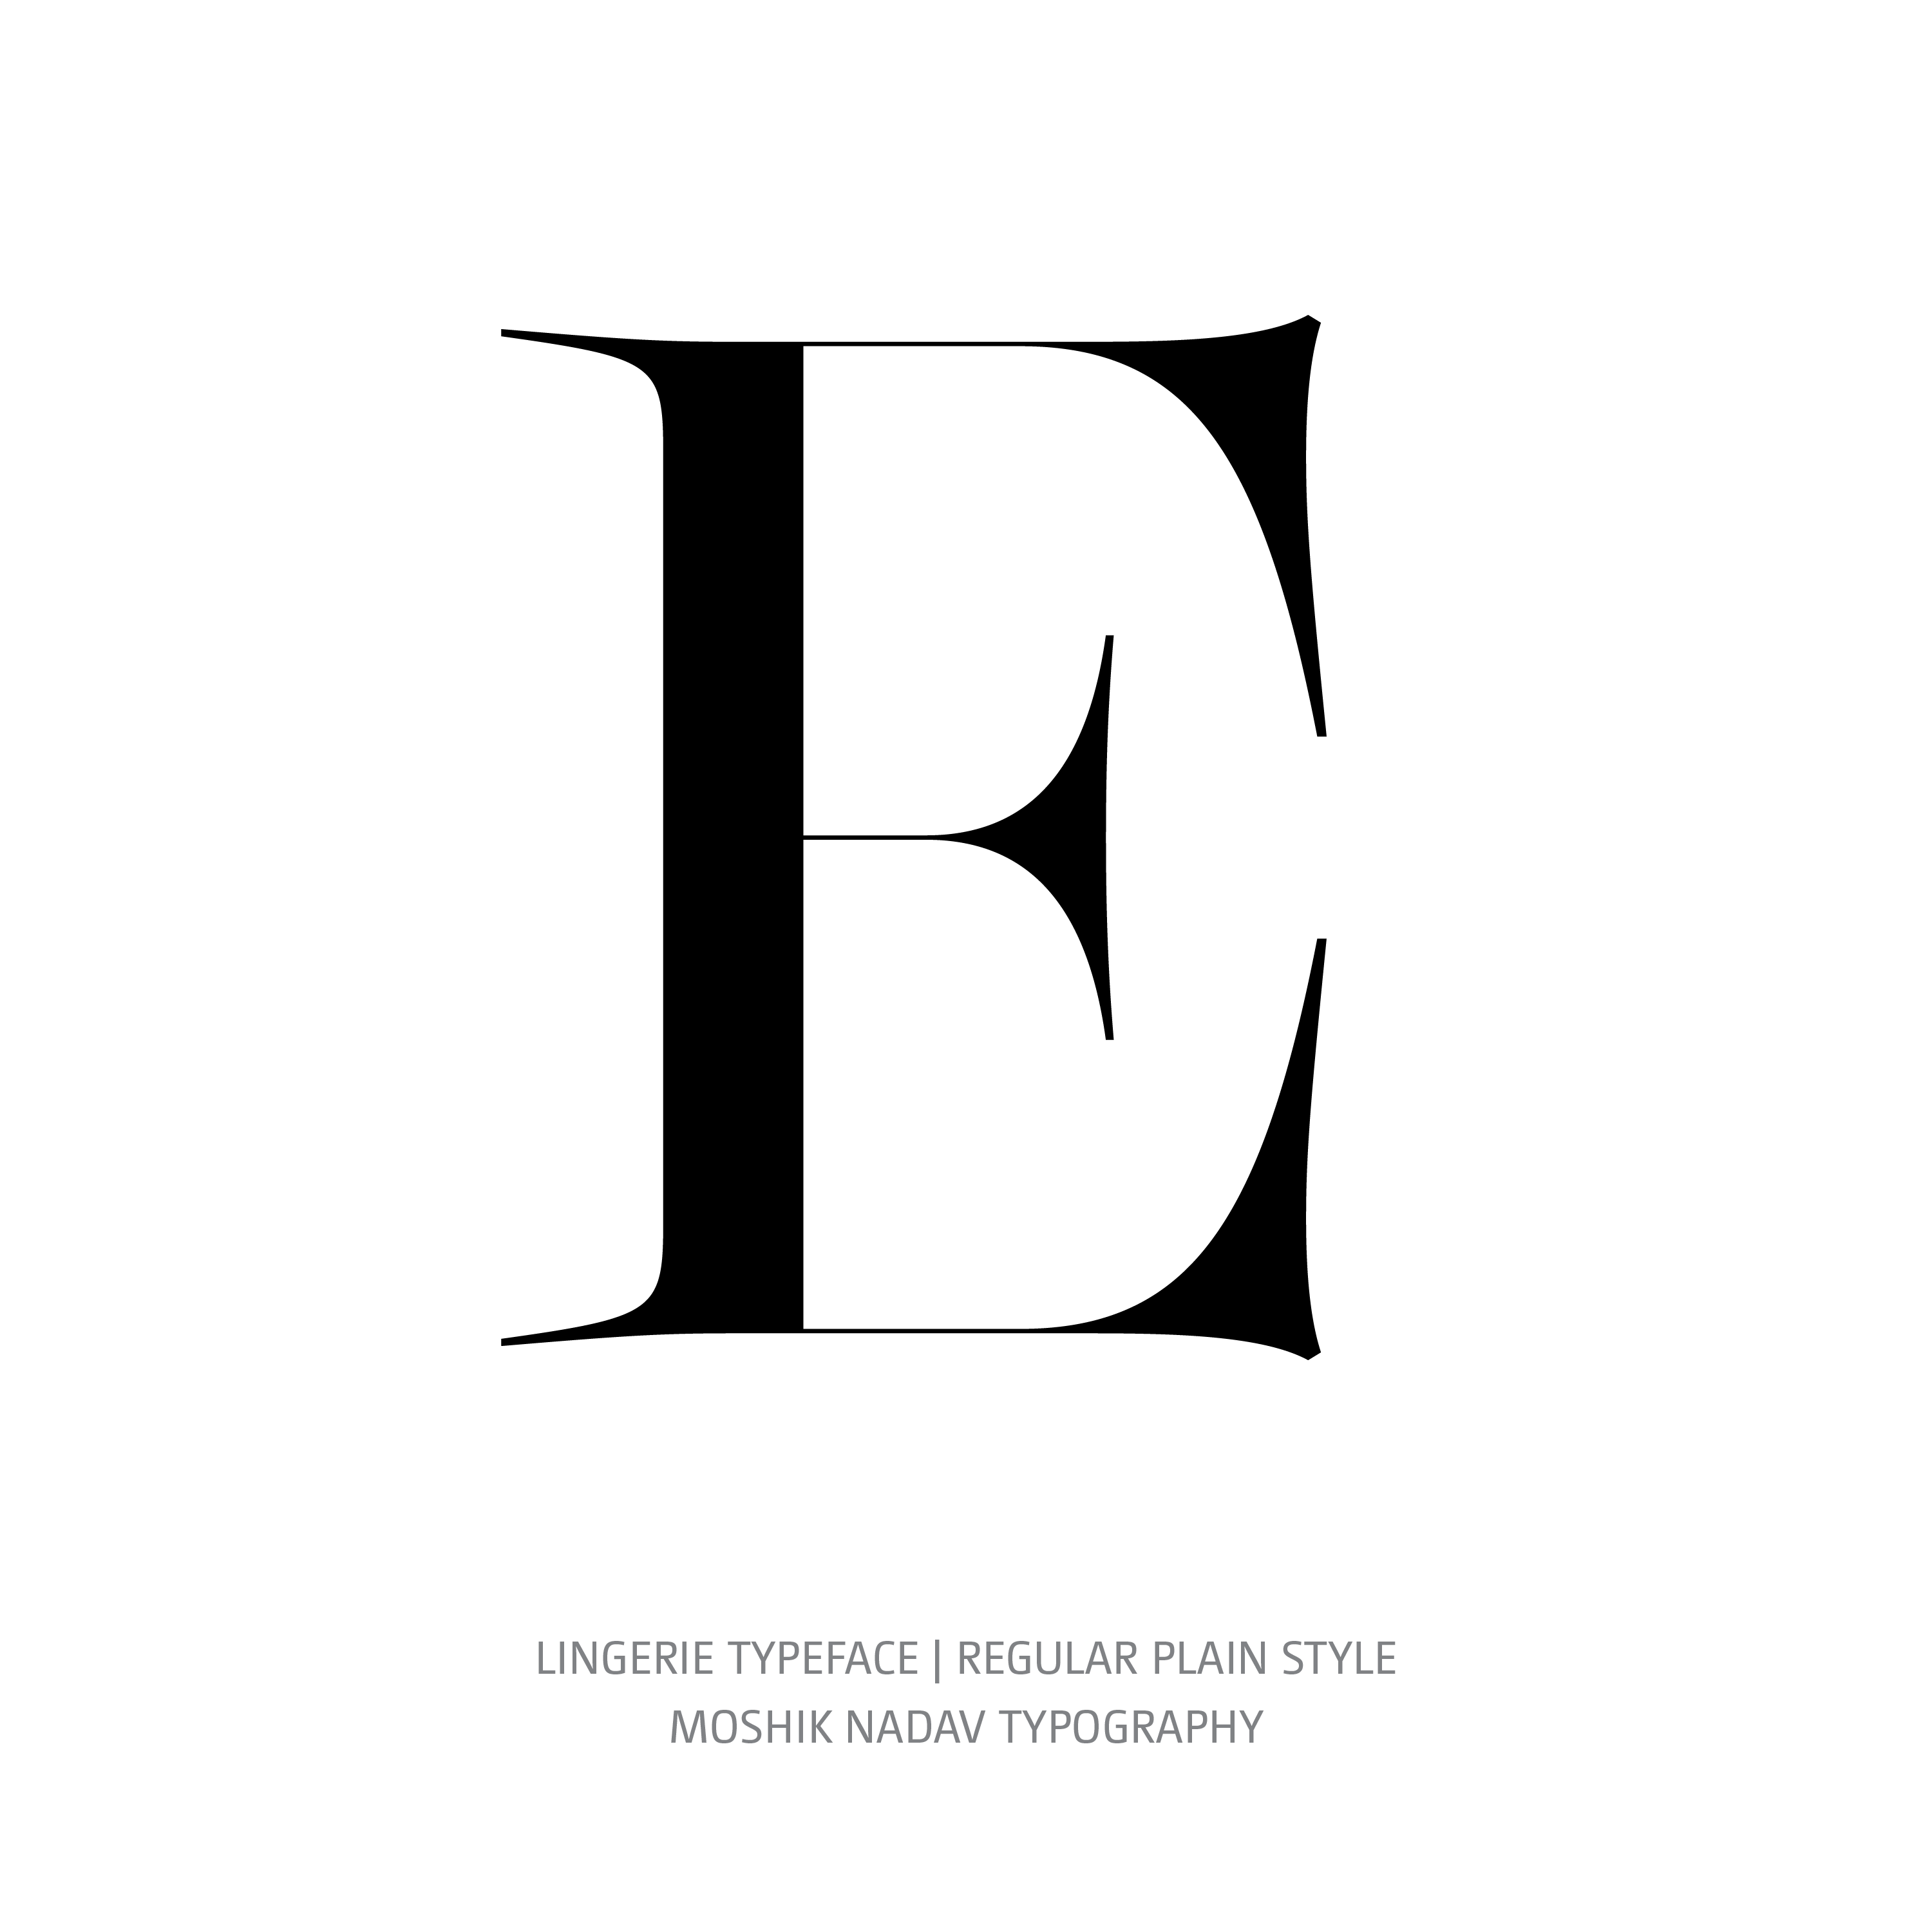 Lingerie Typeface Regular Plain E